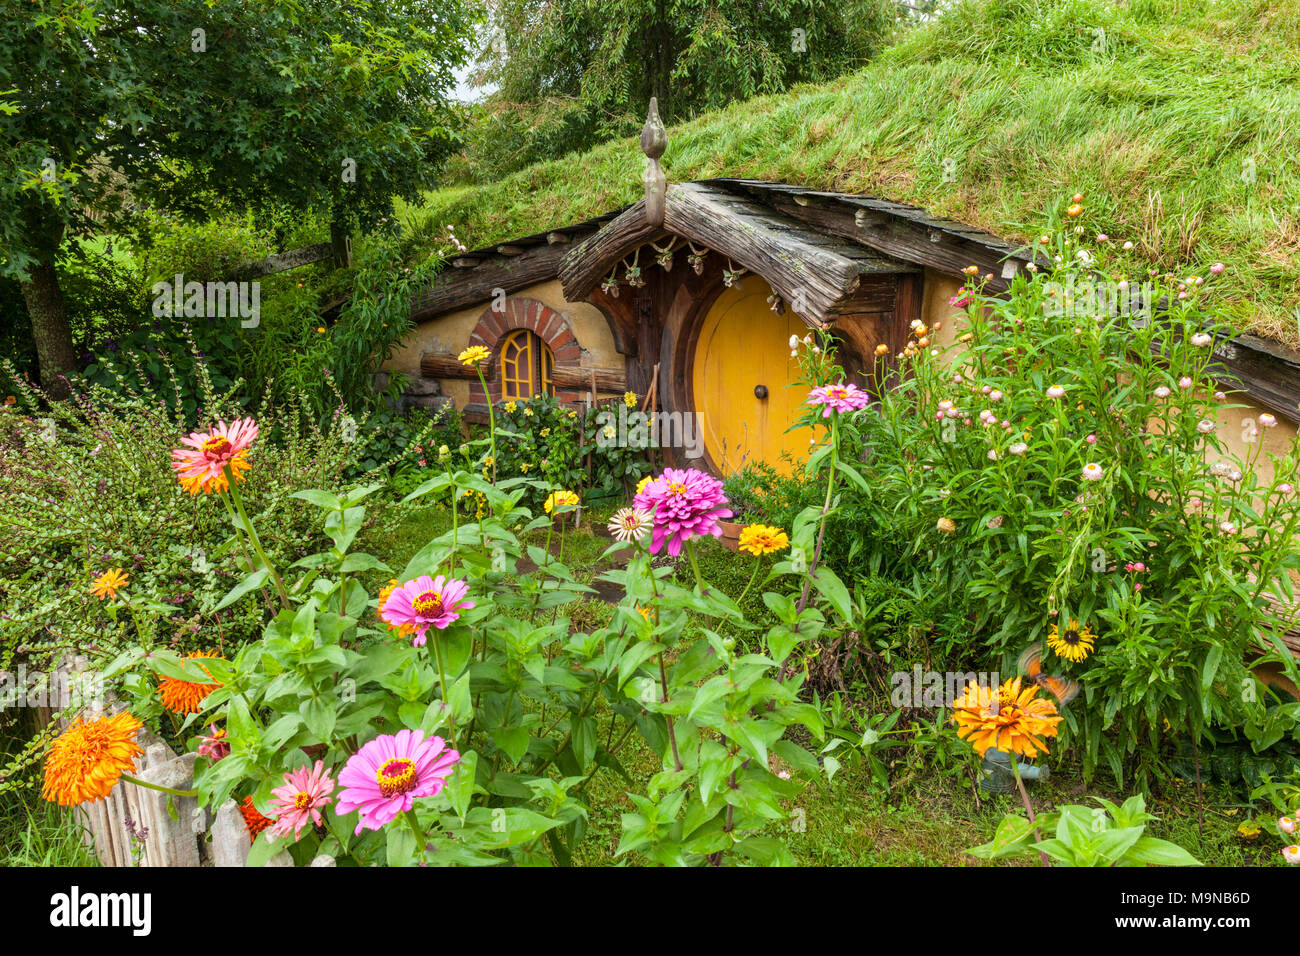 Neuseeland Neuseeland Matamata Hobbiton Hobbiton film fiktiven Dorf Hobbiton im Auenland aus dem Hobbit und Herr der Ringe Bücher Stockfoto